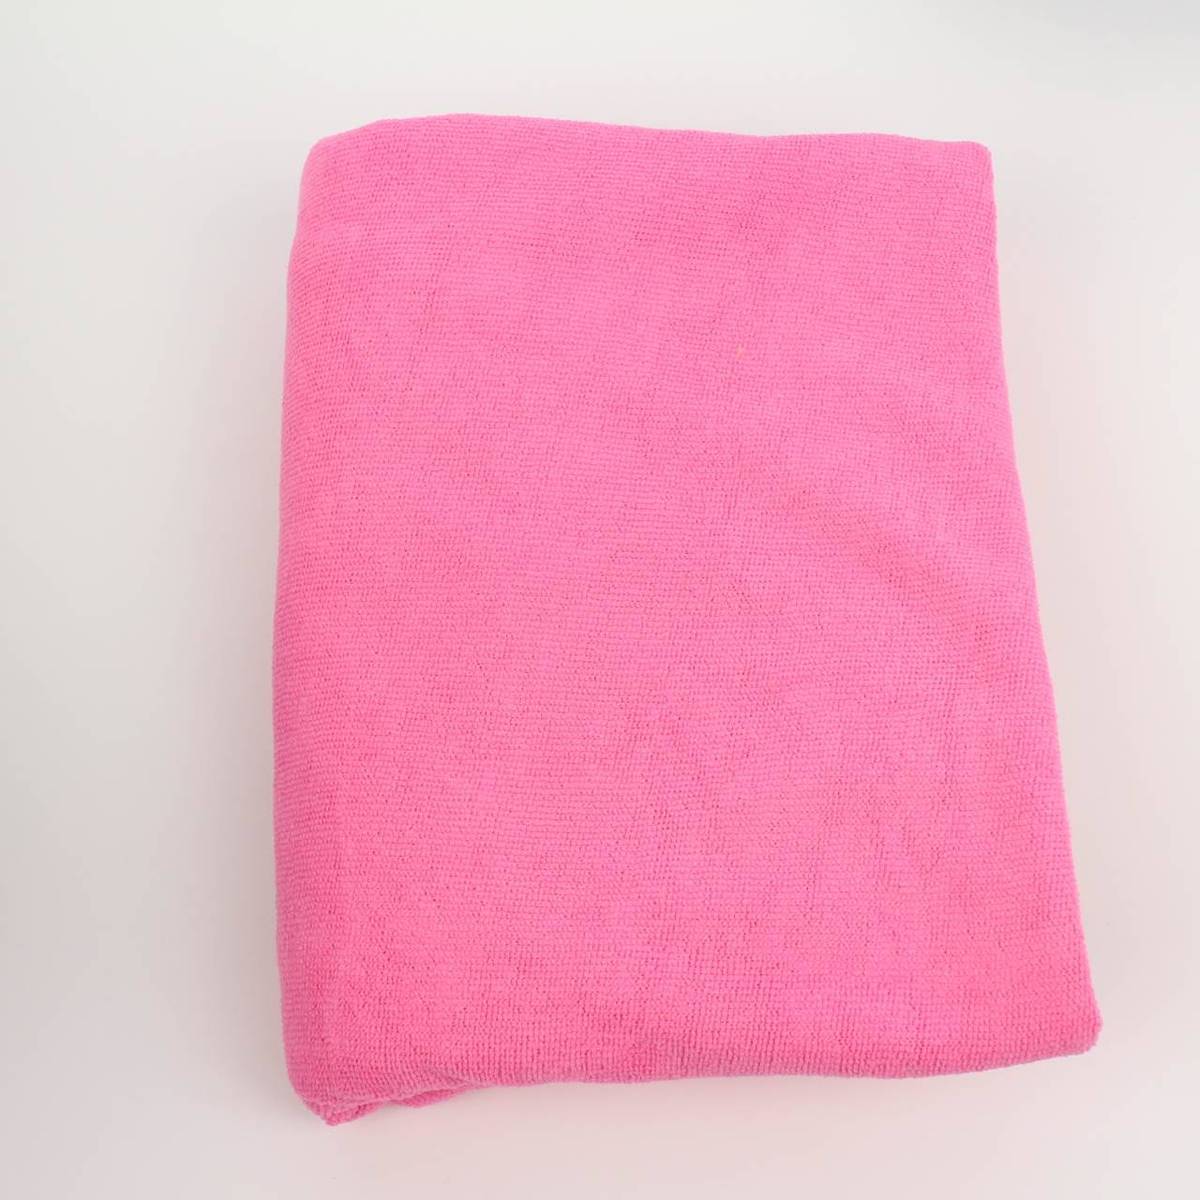 Microfiber håndklæde • Find den billigste pris hos PriceRunner nu »